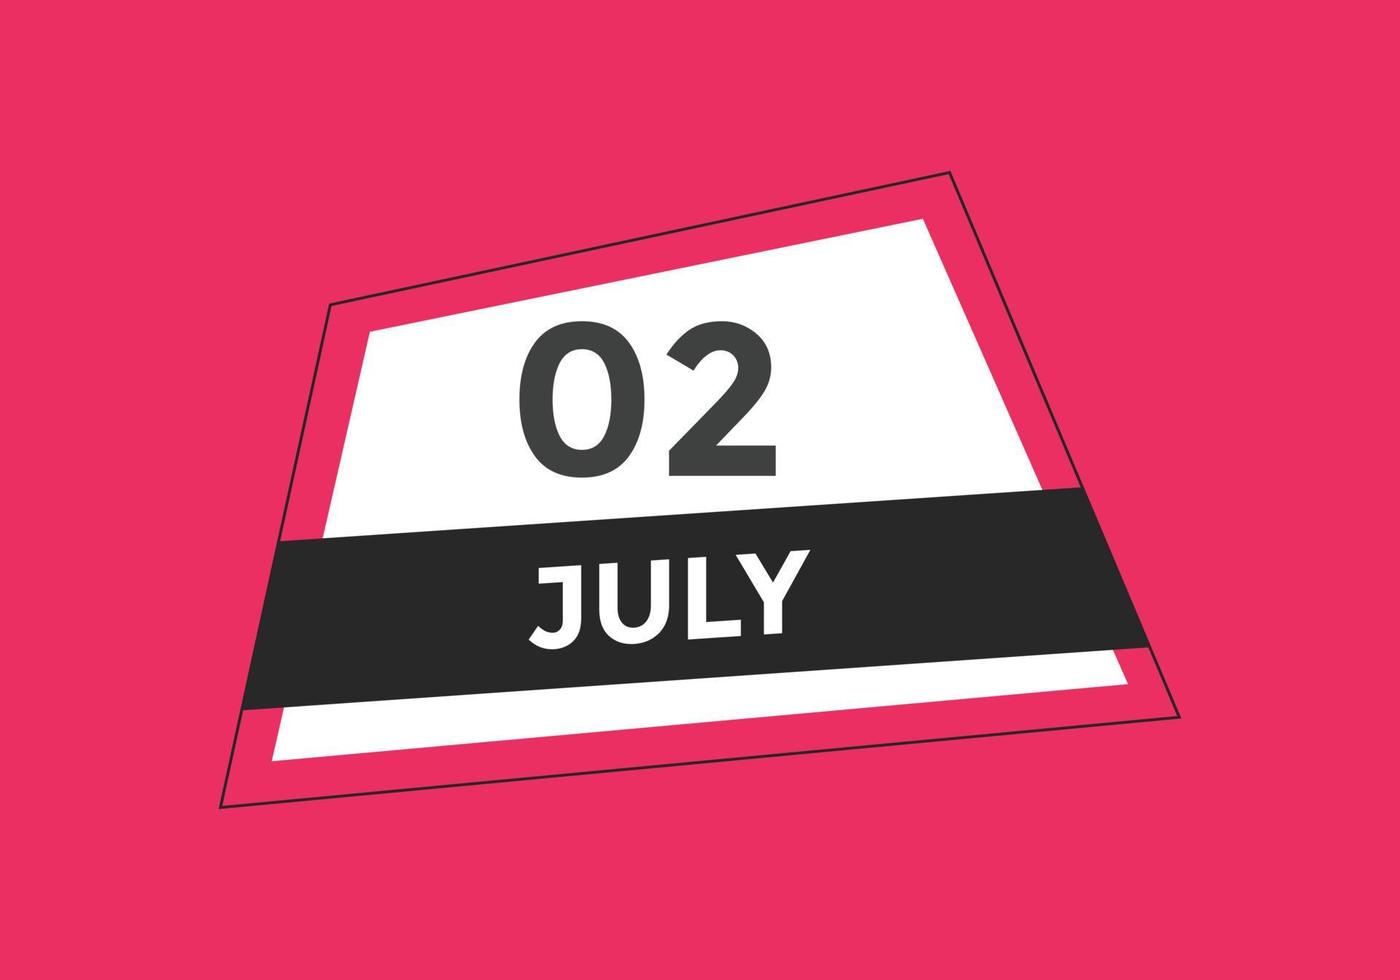 july 2 calendar reminder. 2nd july daily calendar icon template. Calendar 2nd july icon Design template. Vector illustration